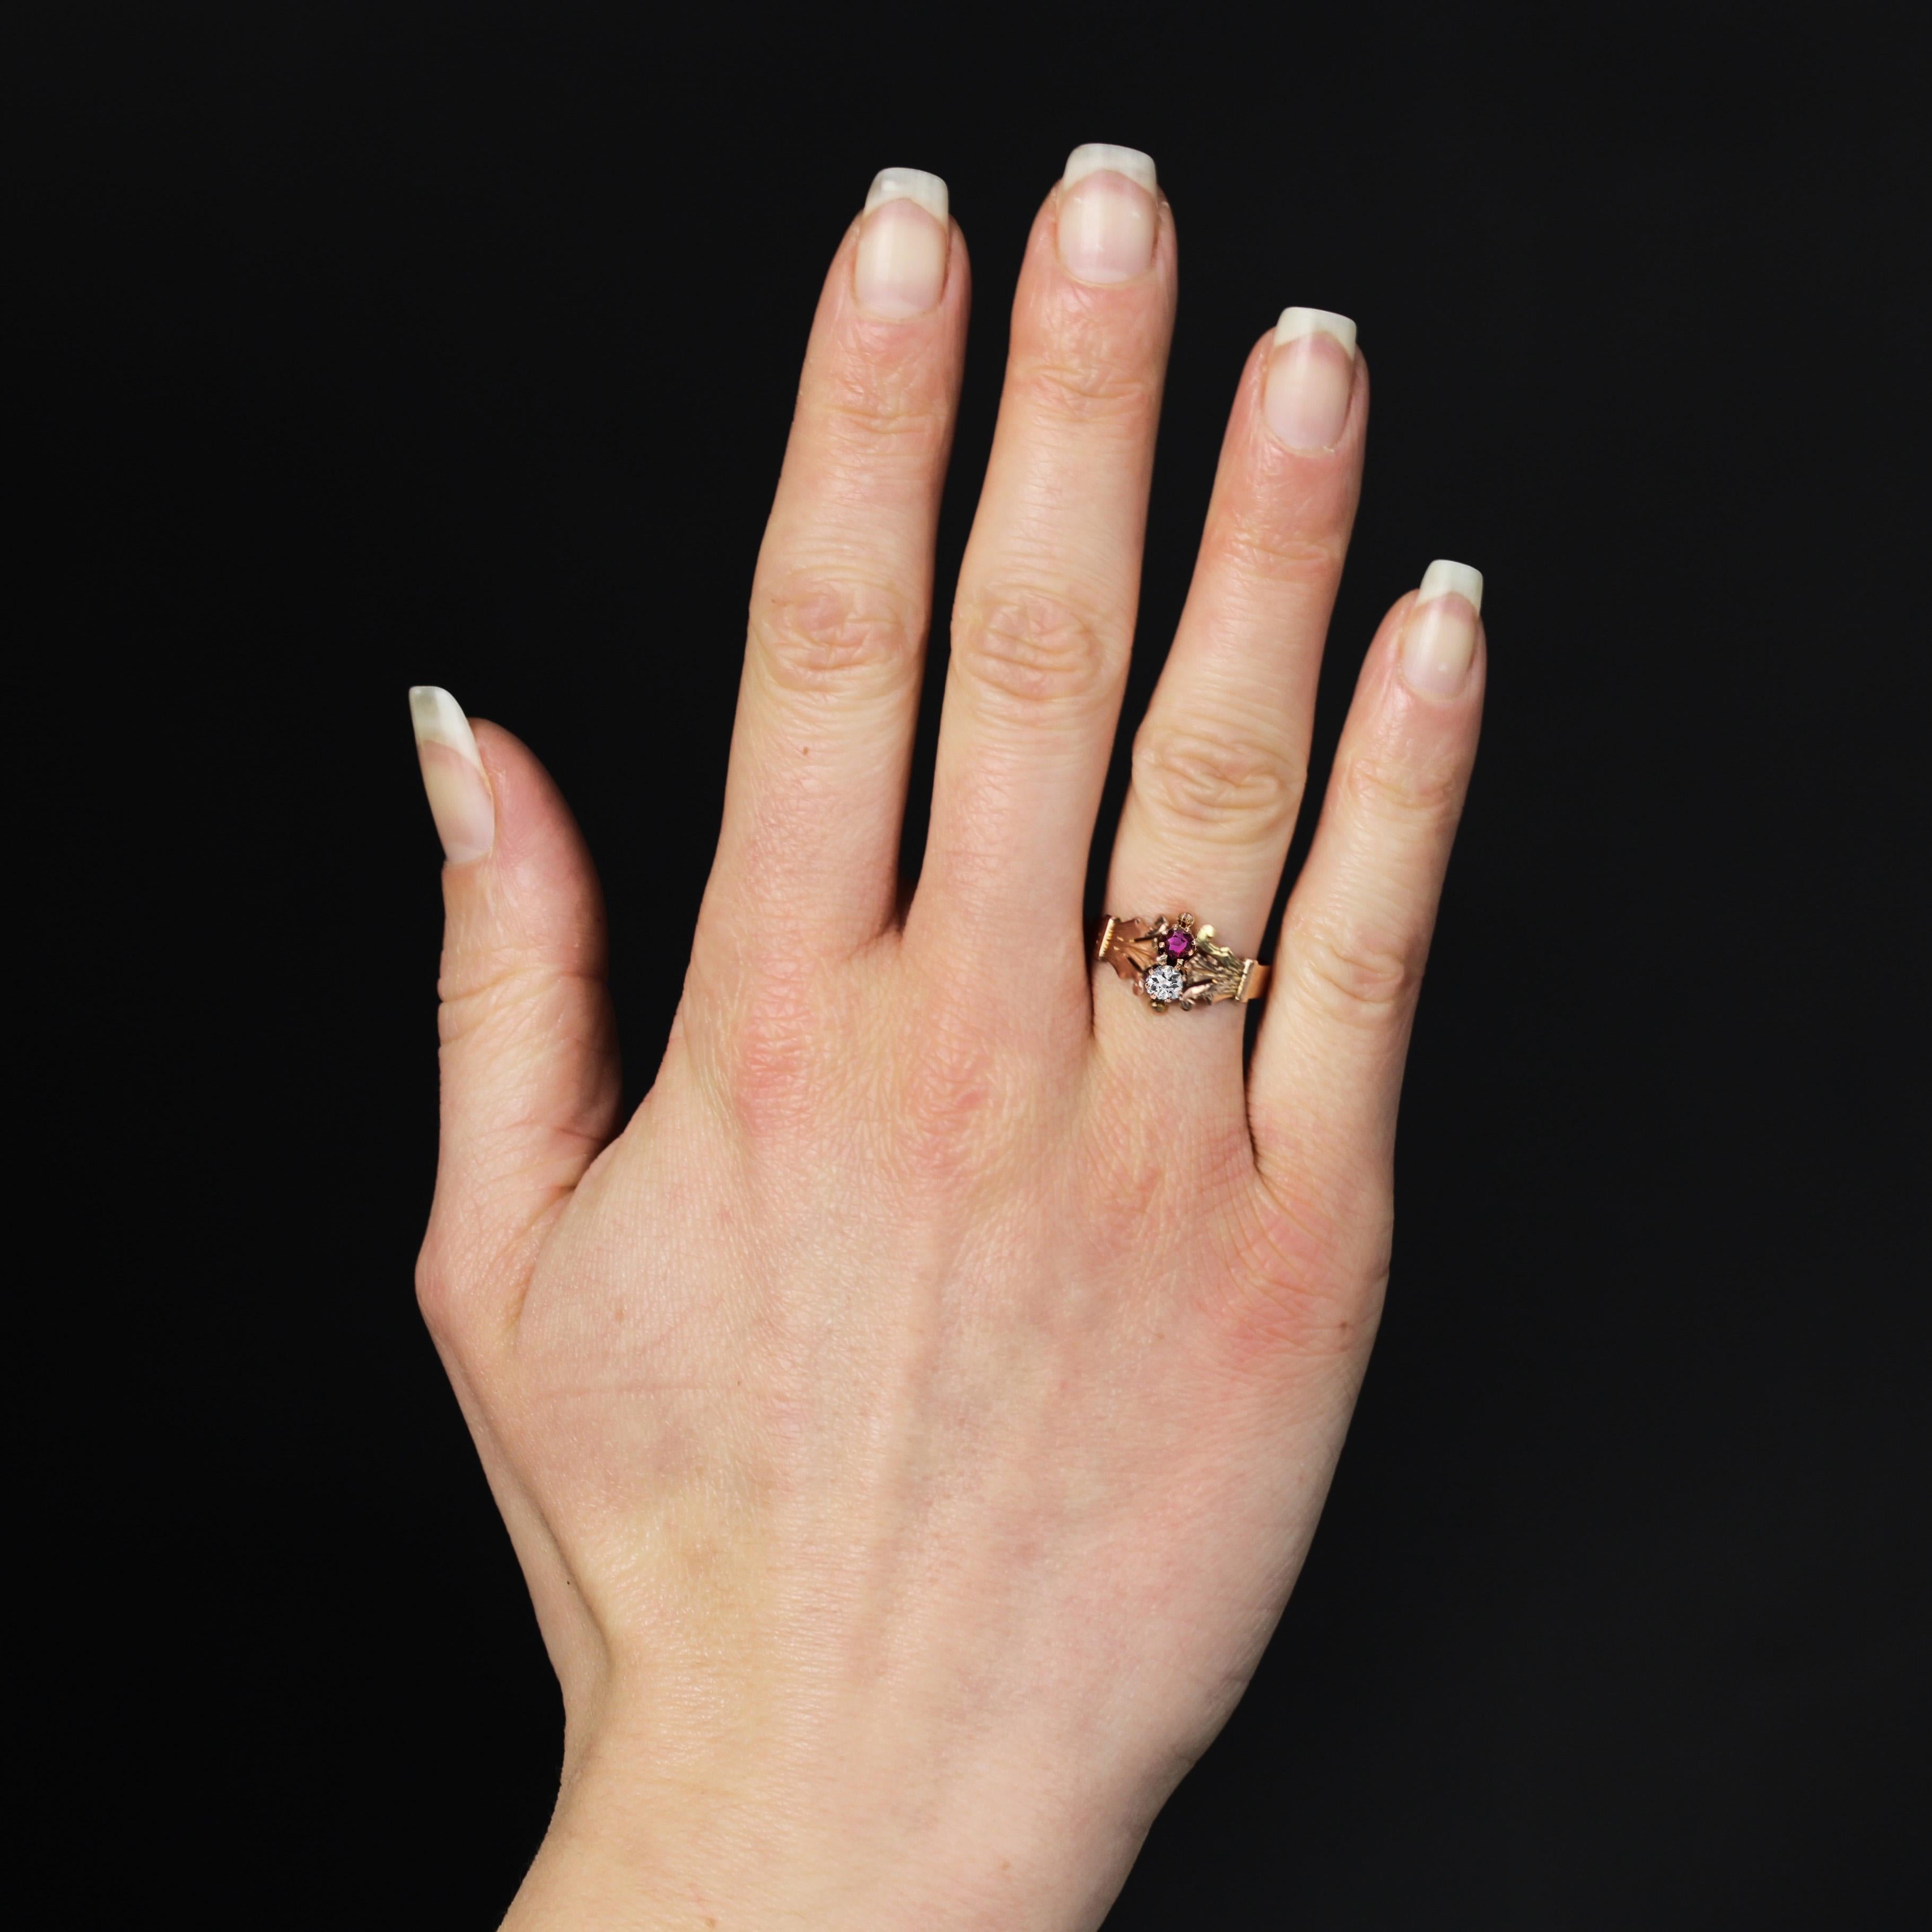 Ring aus 18 Karat Roségold, Pferdekopfpunze.
Dieser prächtige antike Ring zeigt ein eingraviertes Fleur-de-Lis-Motiv an der Basis des Bandes, das einen antiken Diamanten im Brillantschliff und einen runden Rubin hält. Eine kleine Goldperle umrahmt